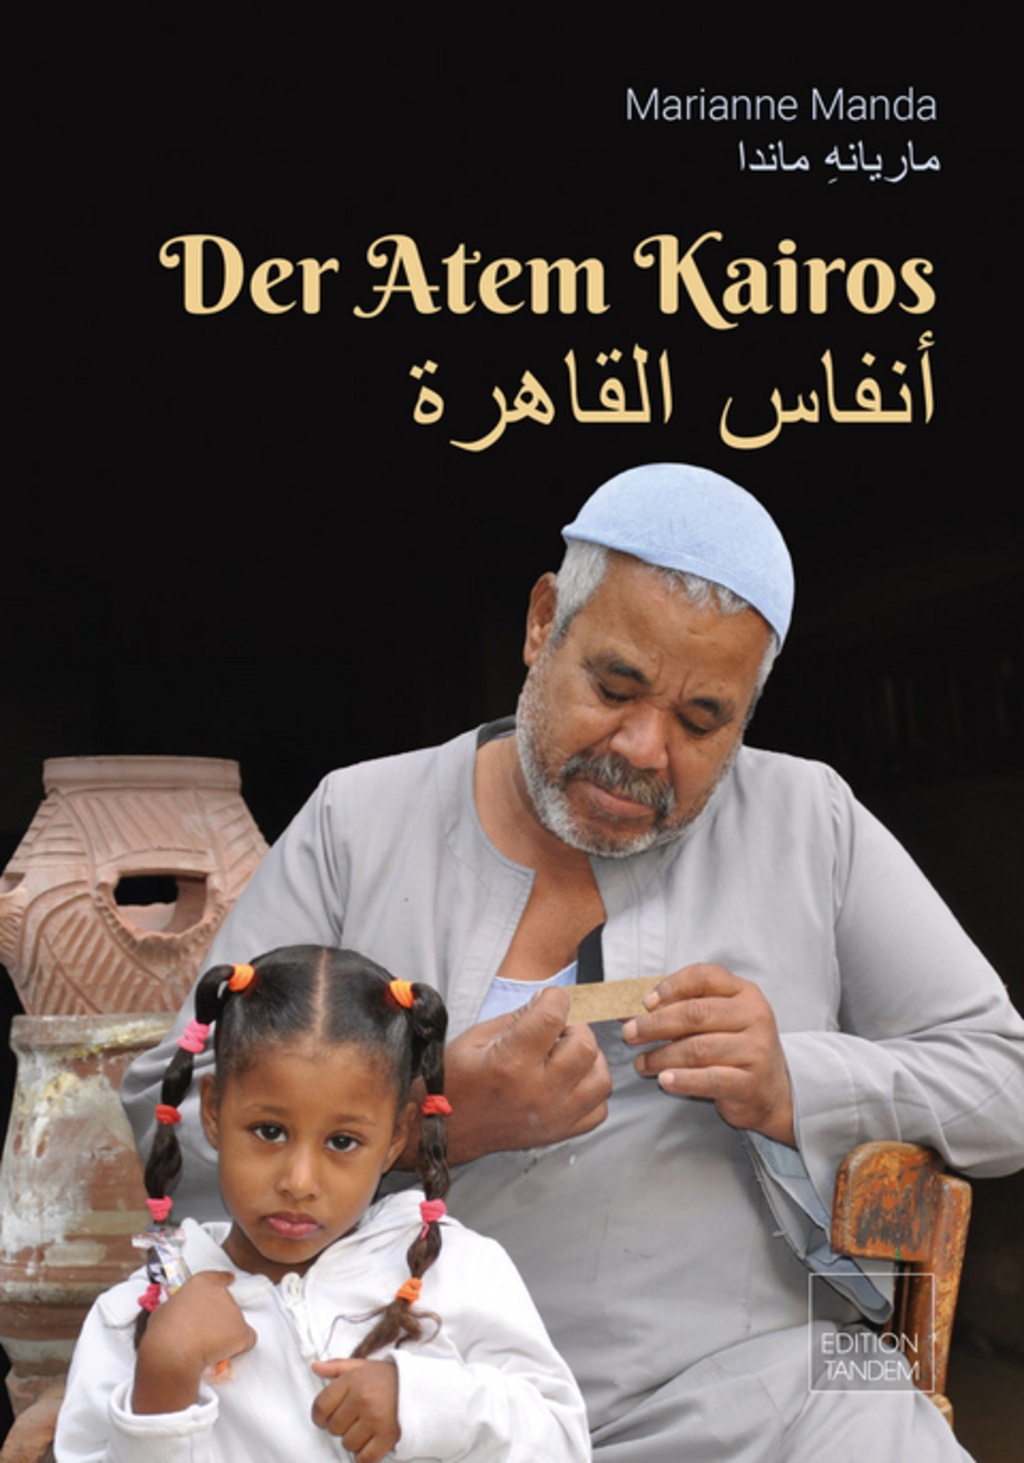 Cover von Marianne Mandas "Der Atem Kairos", erschienen 2021 bei Edition Tandem; Quelle: Verlagbei 